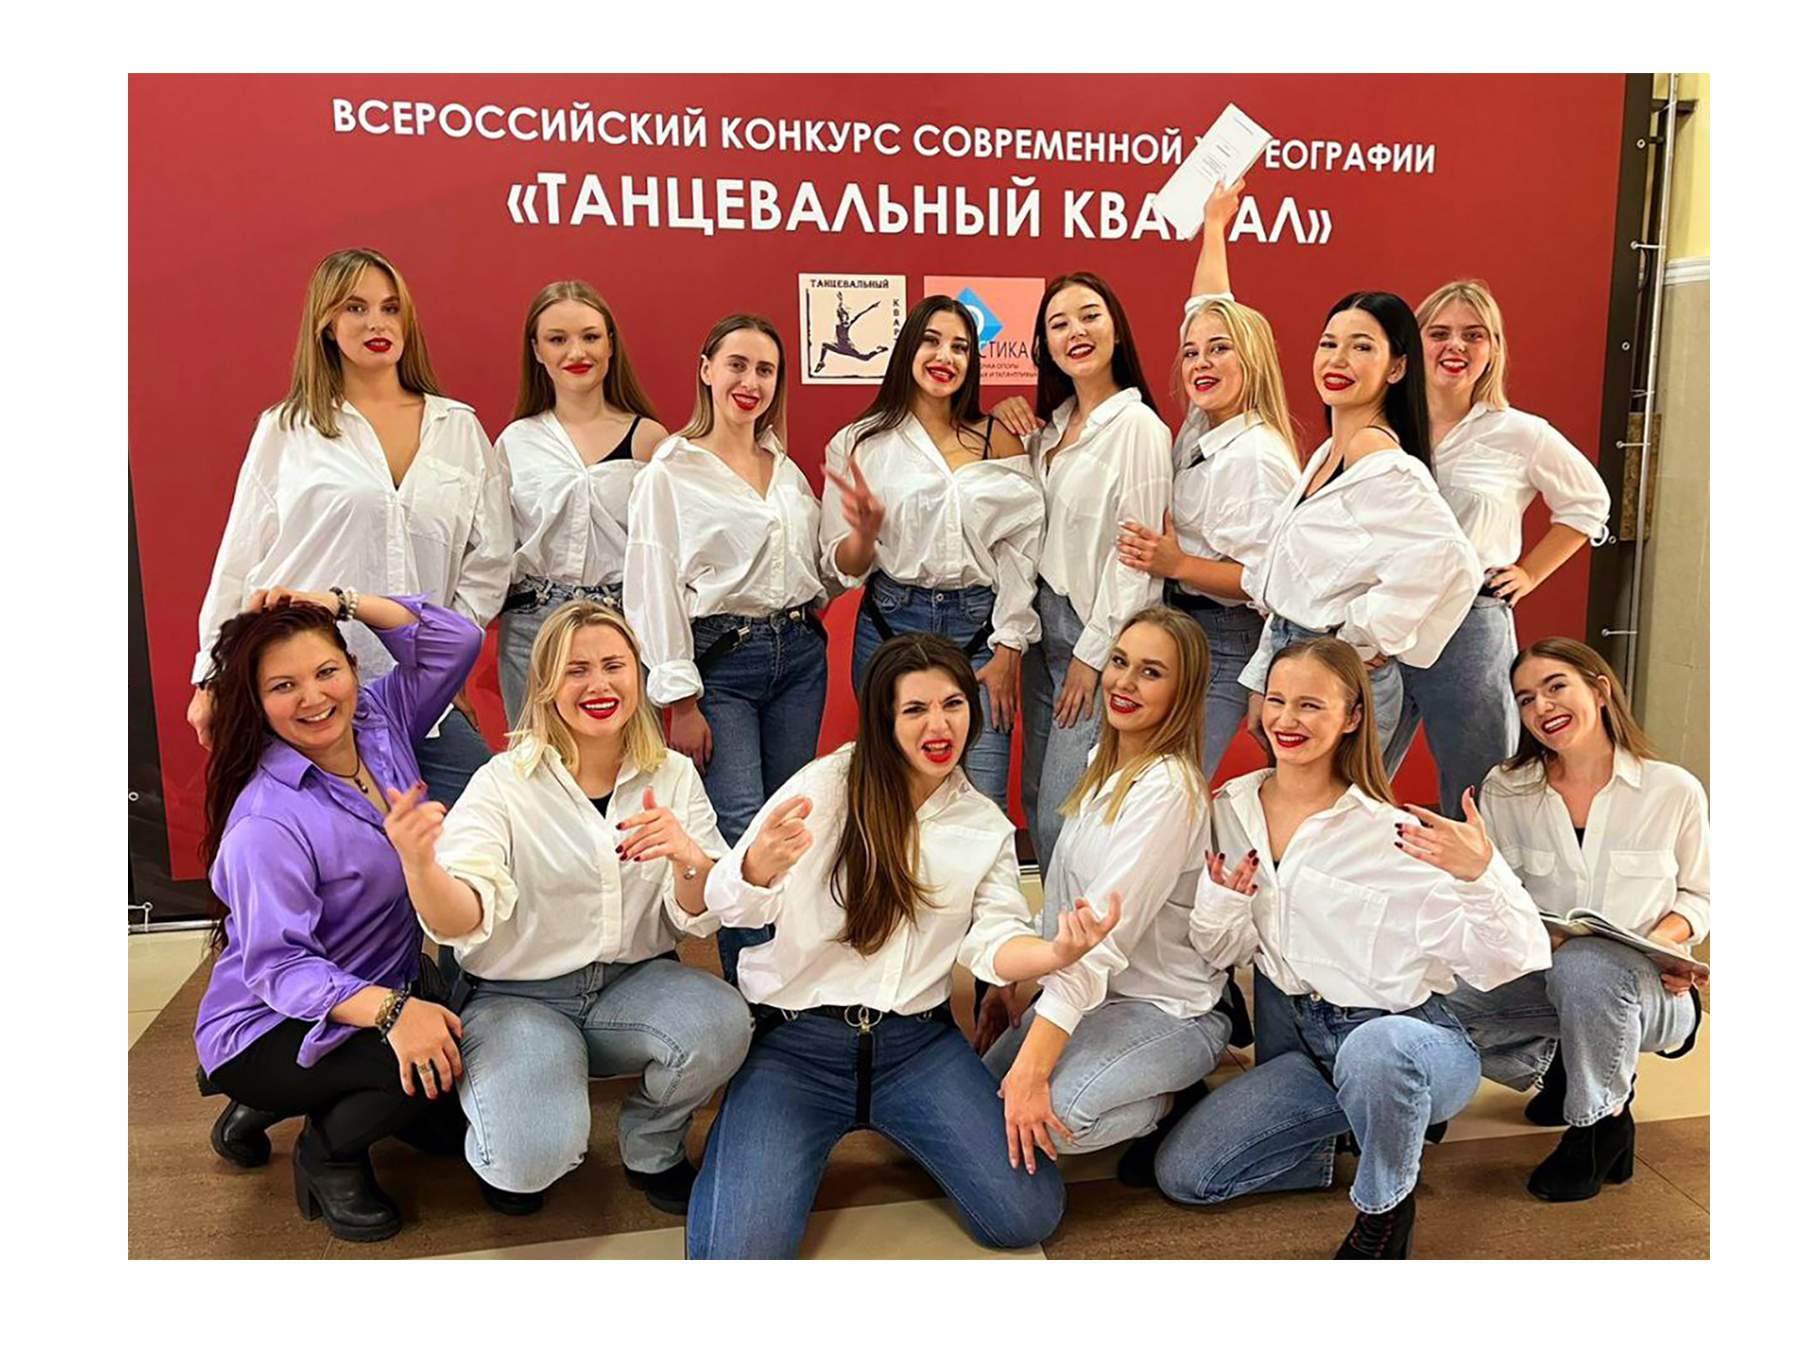 Творческие коллективы ВВГУ покорили «Танцевальный квартал»